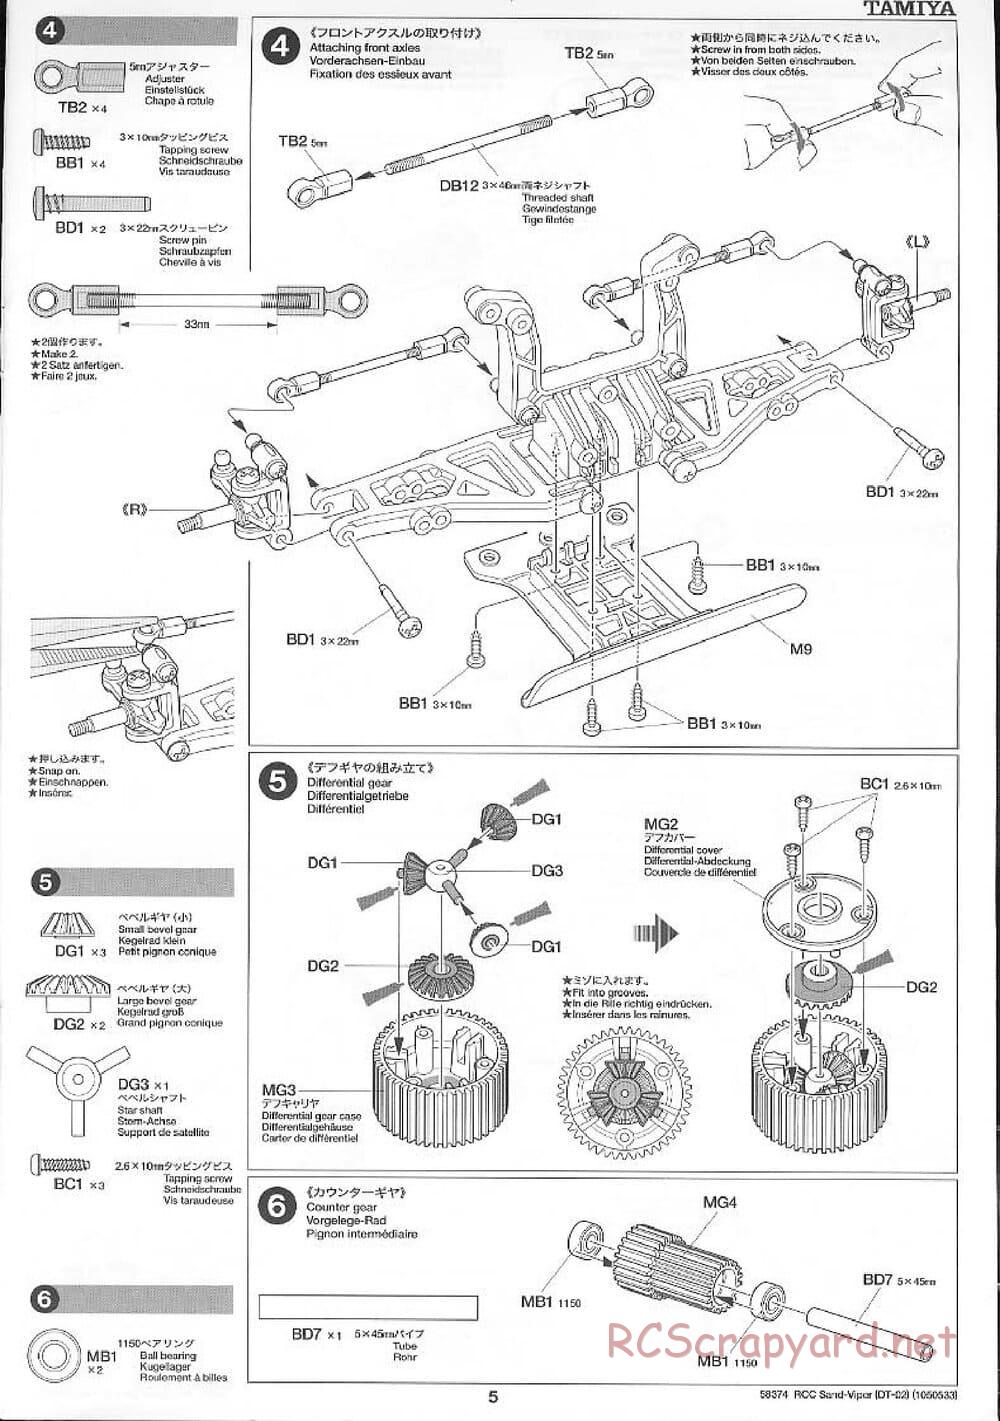 Tamiya - Sand Viper Chassis - Manual - Page 5